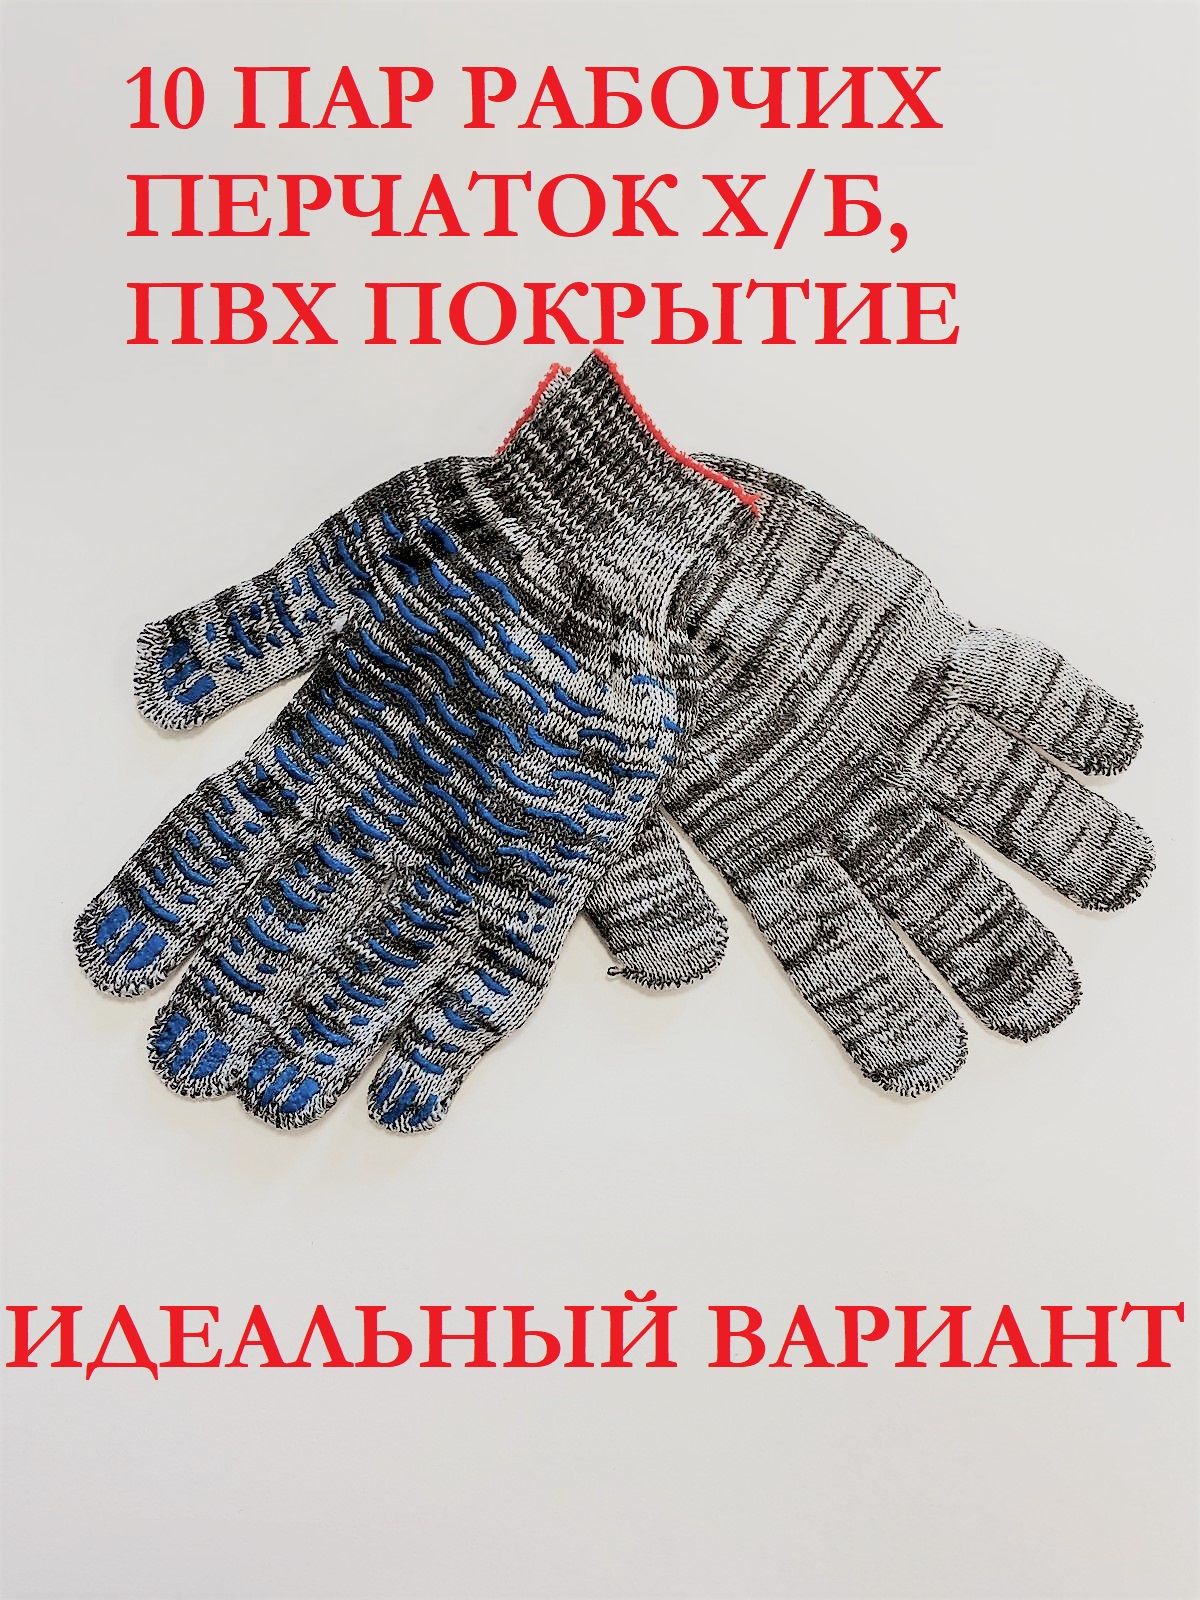 Хозяйственные перчатки KraSimall рабочие защитные ХБ с ПВХ, 6 нитей, серые, 10 пар, 100265